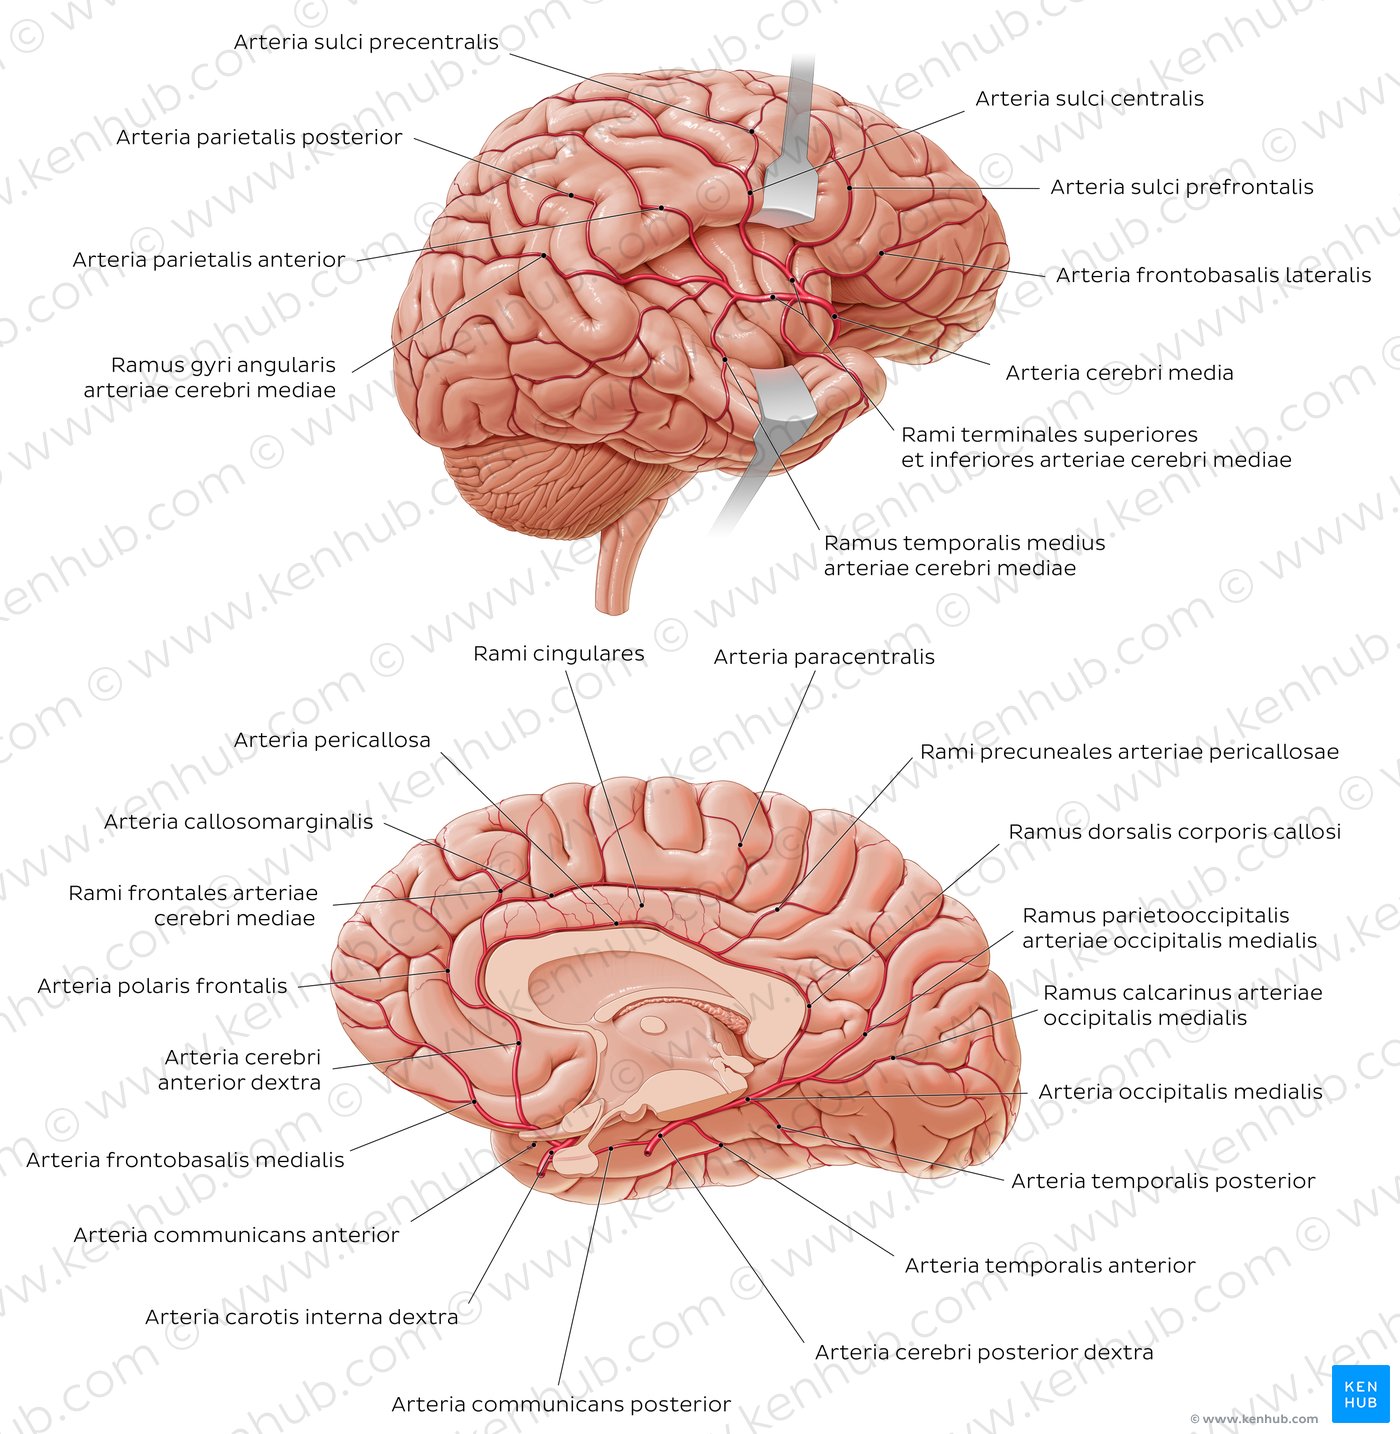 Arterien des Gehirns - Überblick